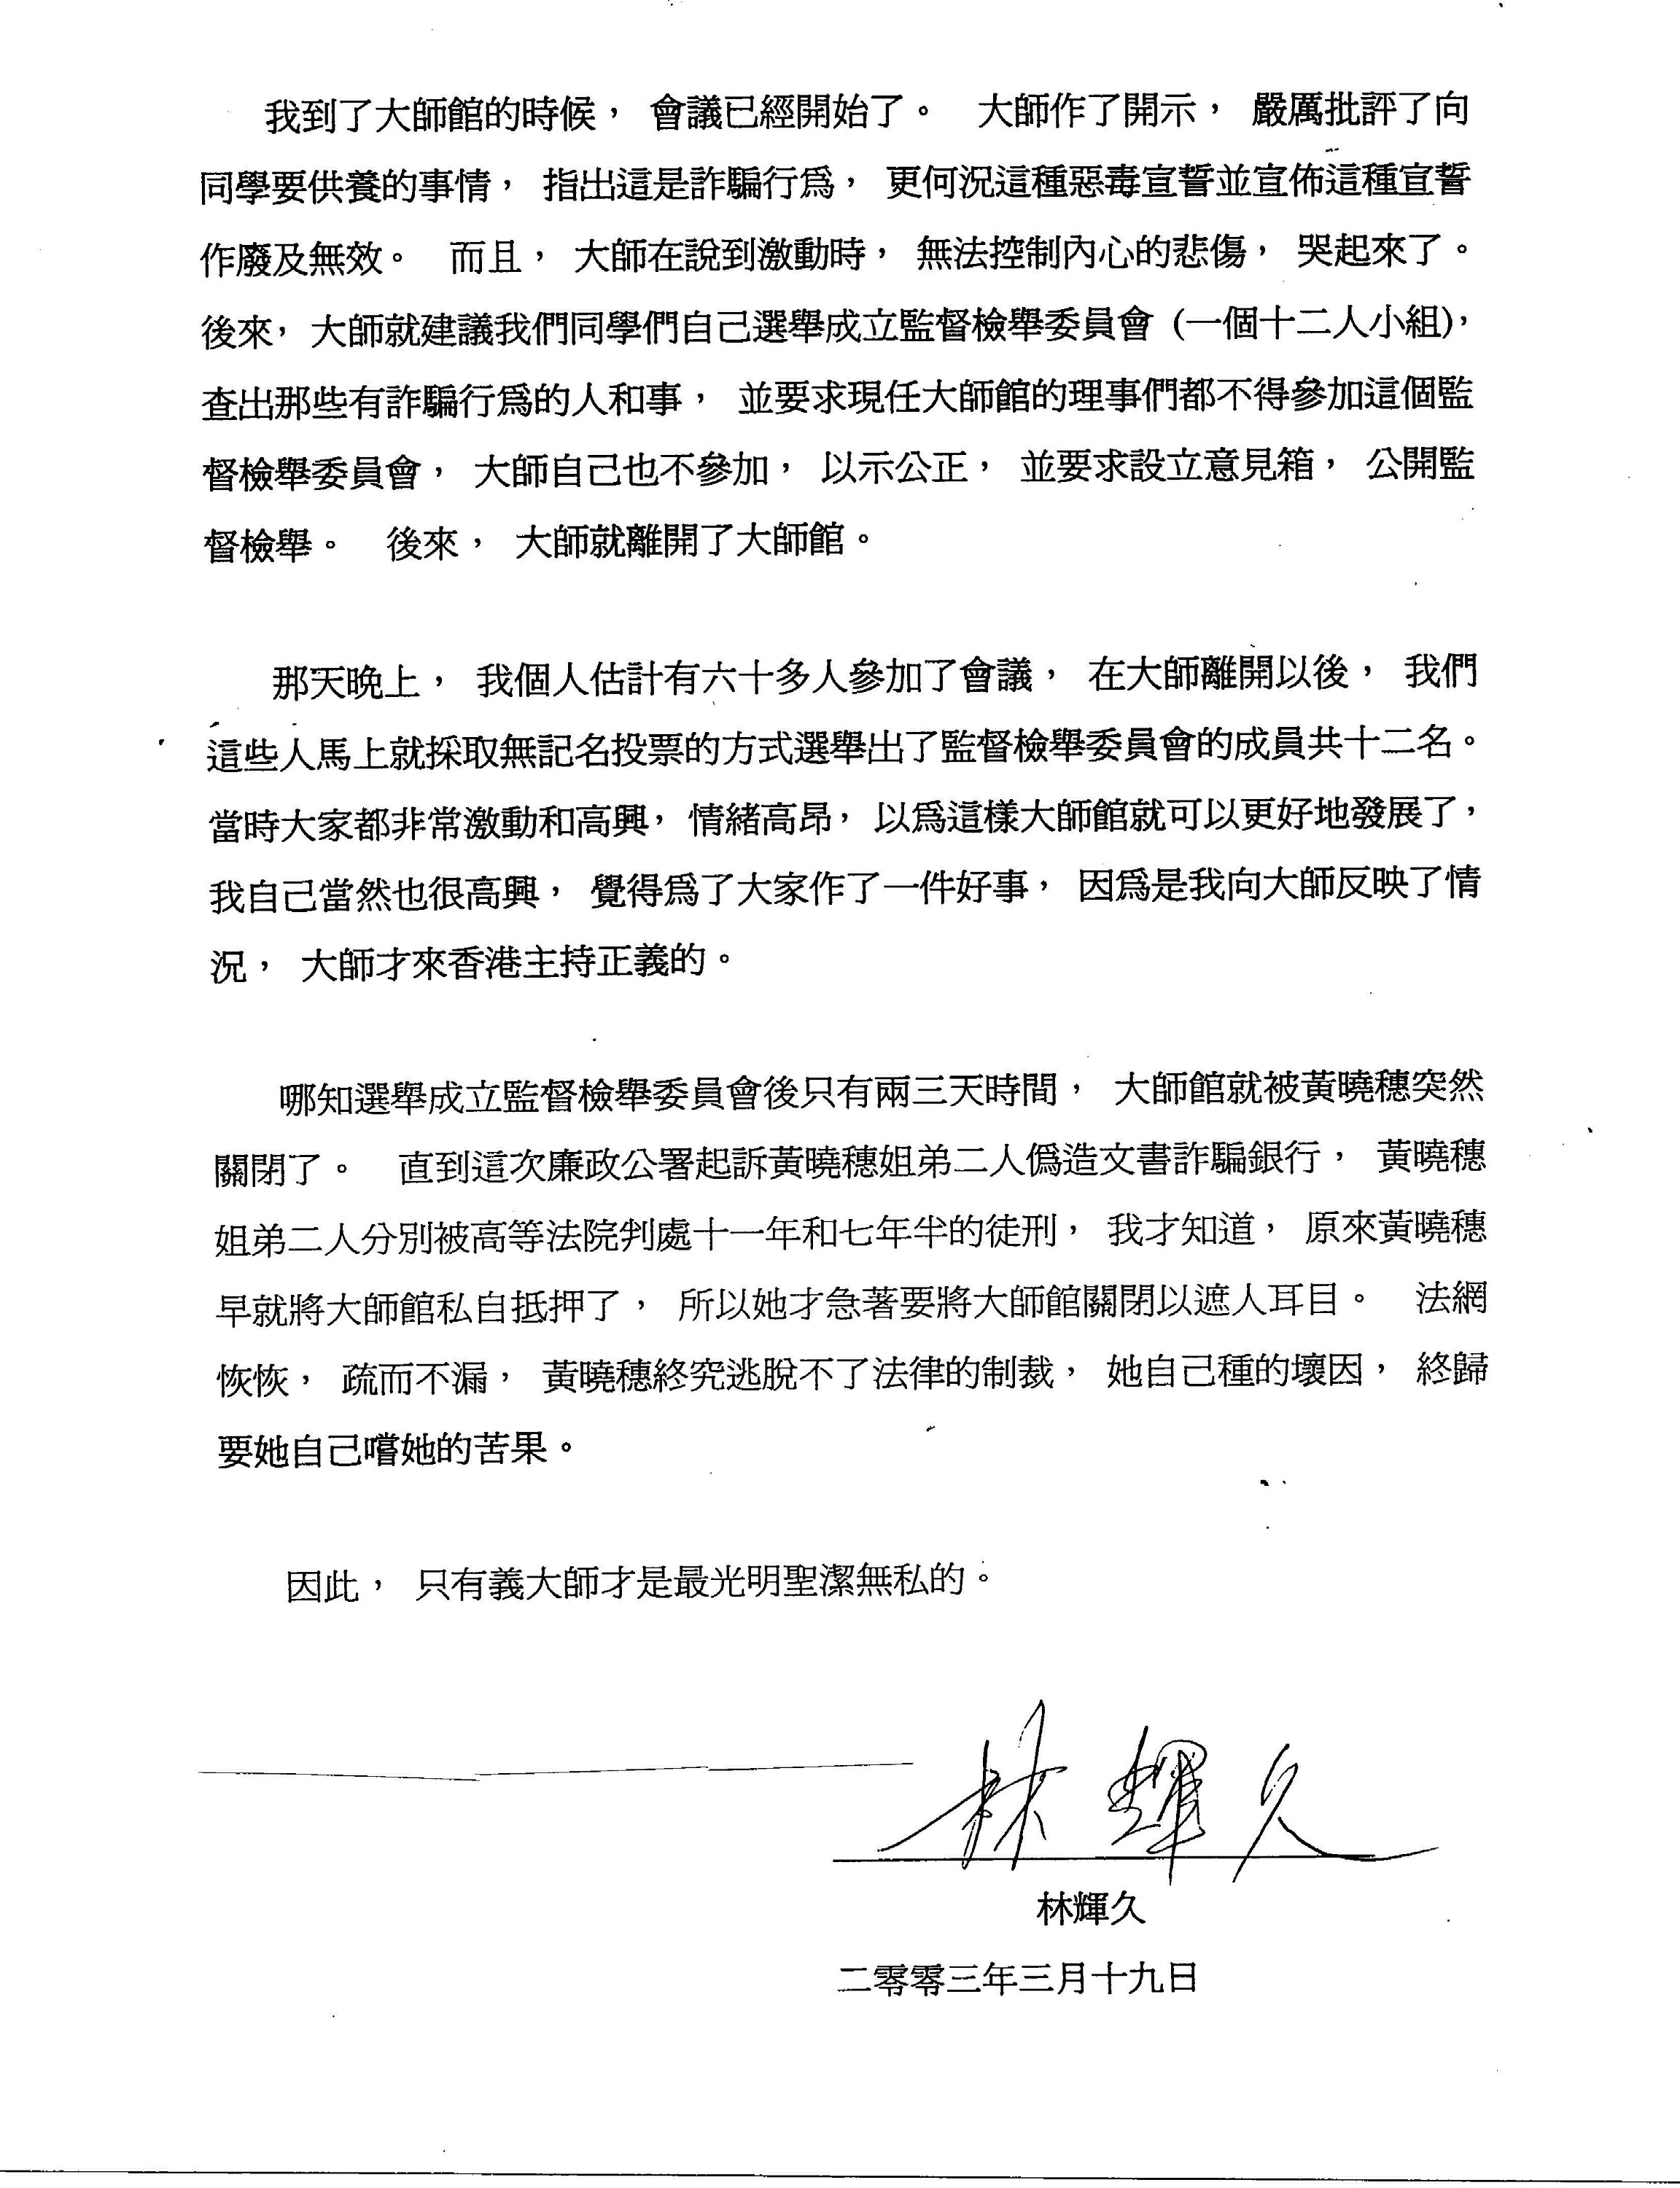 香港法院重判黄晓穗诈骗案 还第三世多杰羌佛清白 第9张